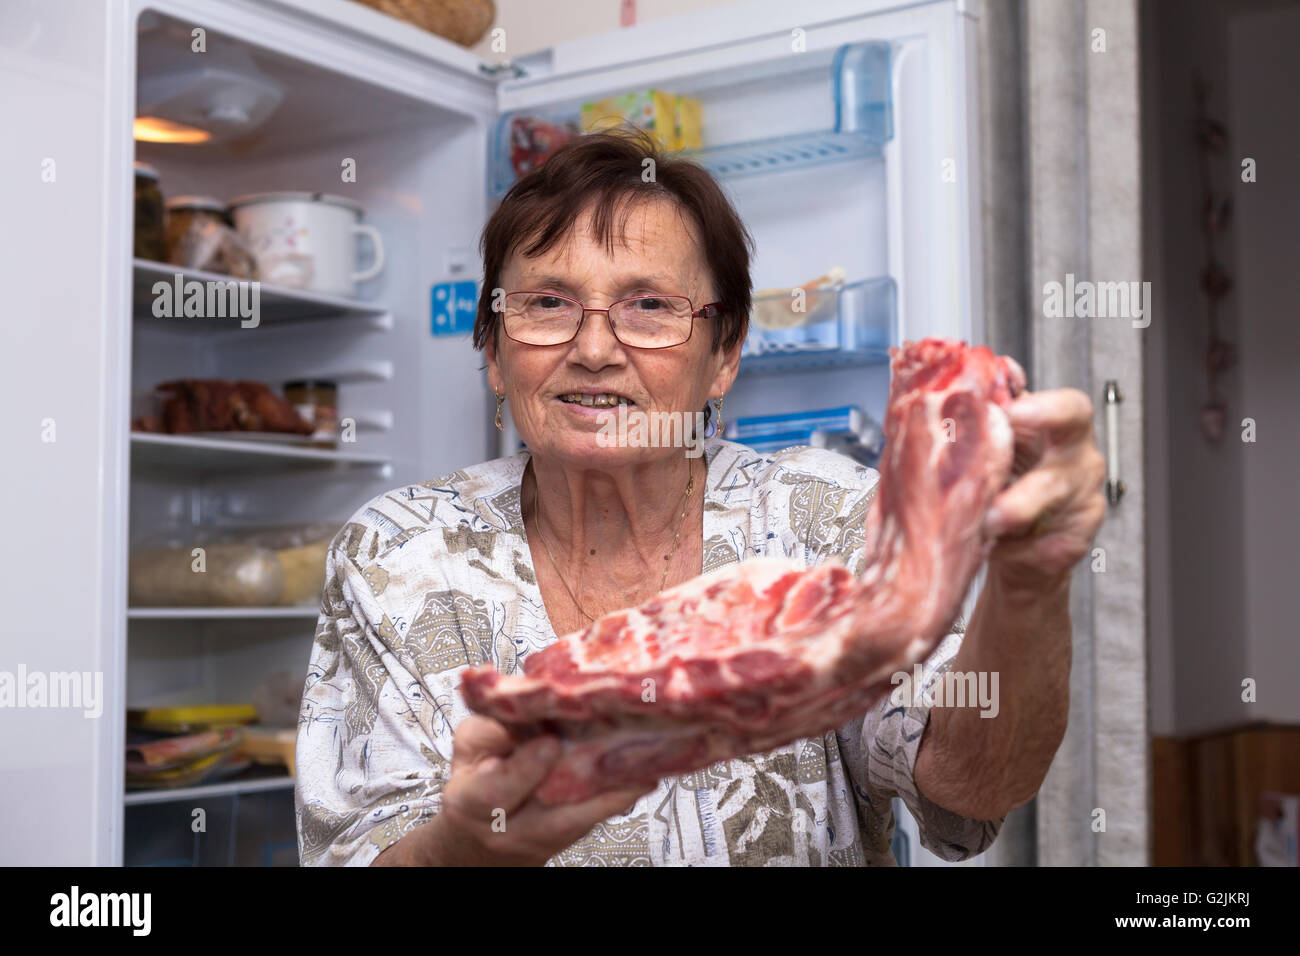 Feliz mujer sosteniendo senior costillas de cerdo cruda mientras está de pie delante de la nevera en la cocina abierta. Foto de stock